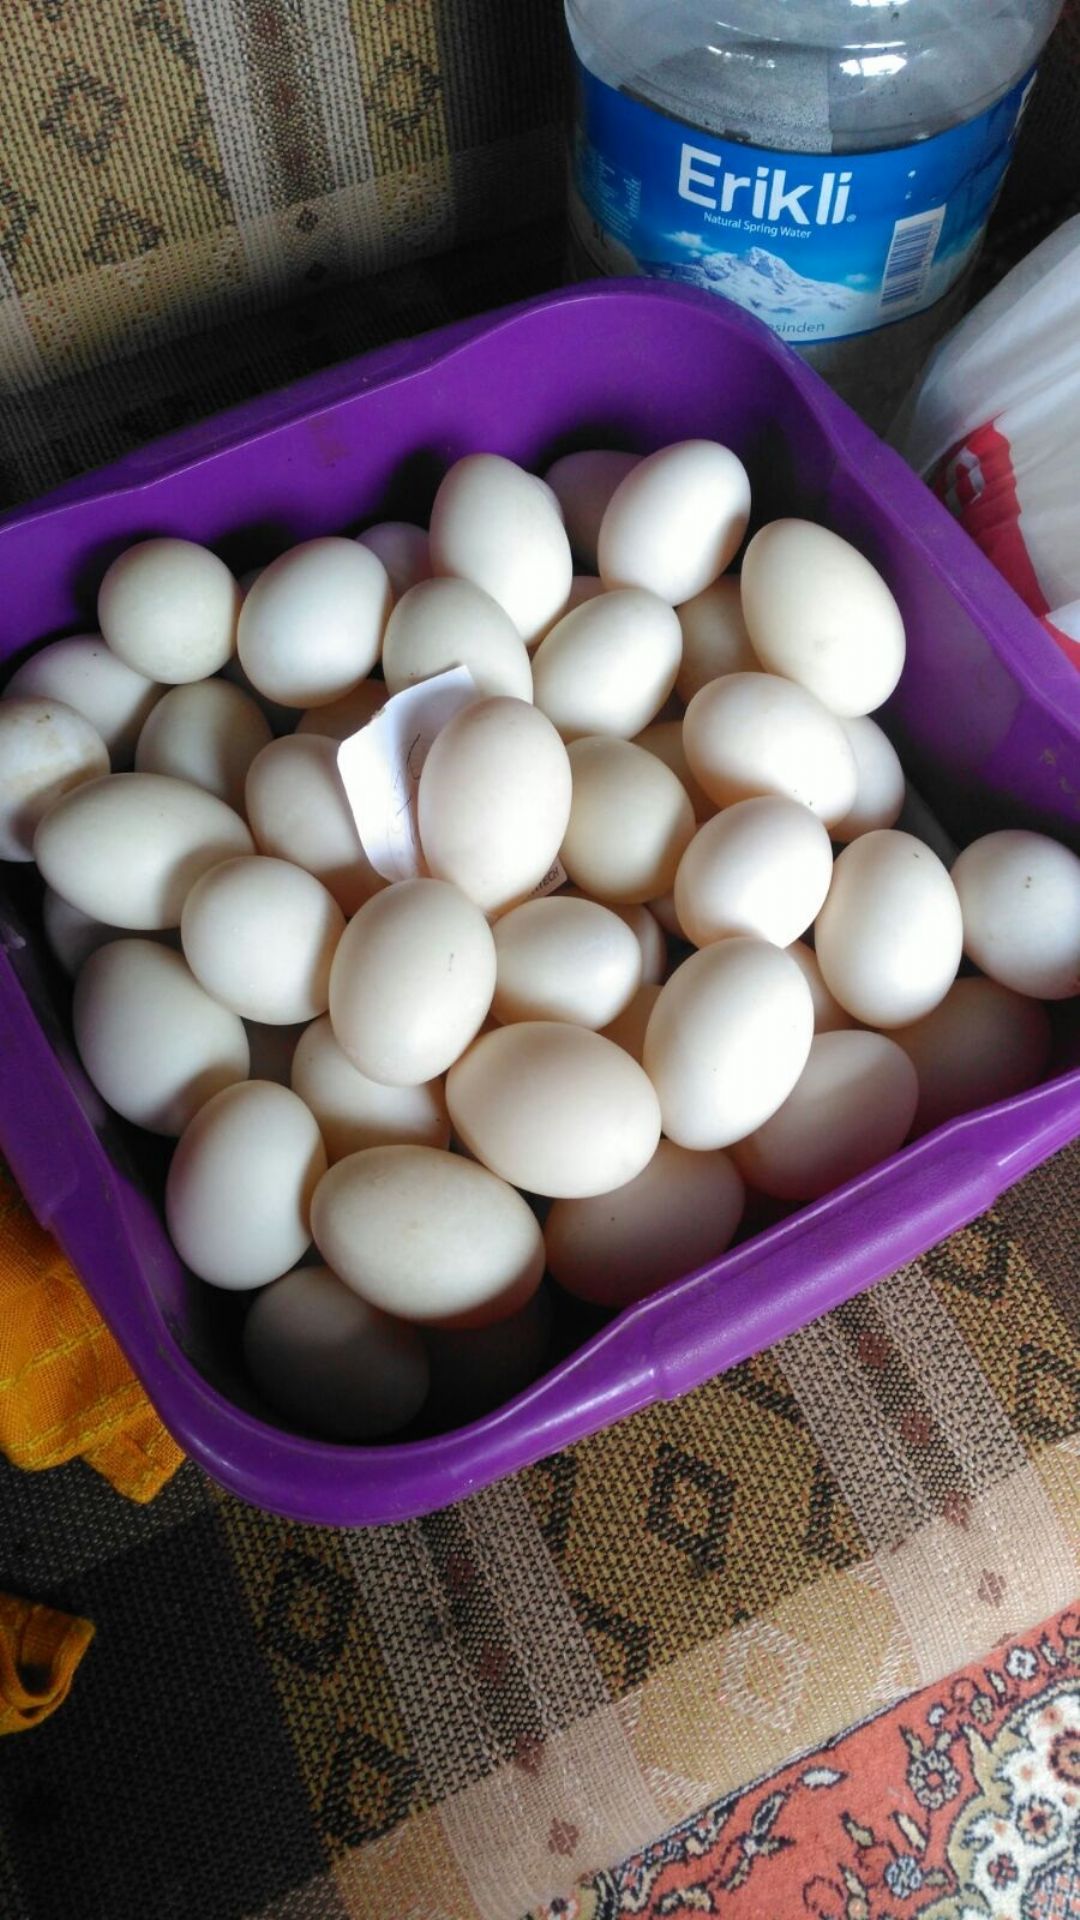 Ördek yumurtası - Mücahit Özen tarafından verilen satılık pekin çeşidi ördek yumurtası  ilanını ve diğer satılık ördek yumurtası ilanlarını tarimziraat.com adresinde bulabilirsiniz